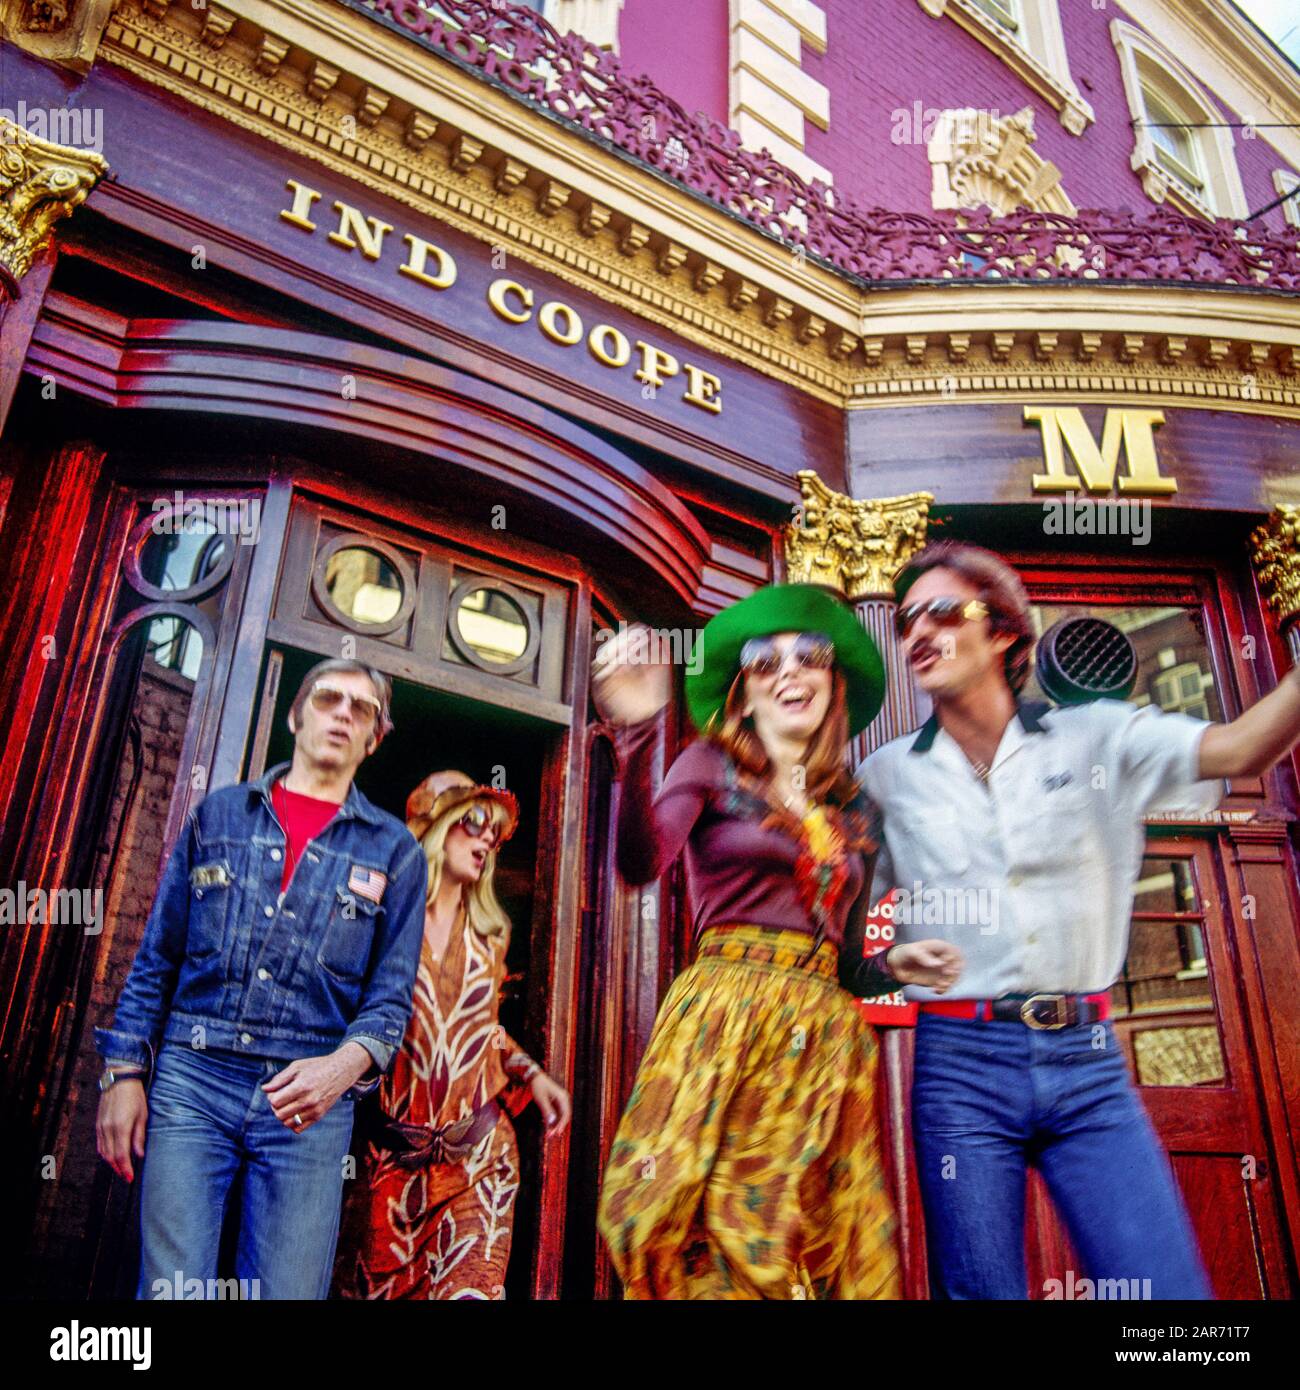 Londra 1970, persone in movimento esuberanti provenienti da Ind Coope Markham Pub, Kings Road, Chelsea, Inghilterra, Regno Unito, GB, Gran Bretagna, Foto Stock